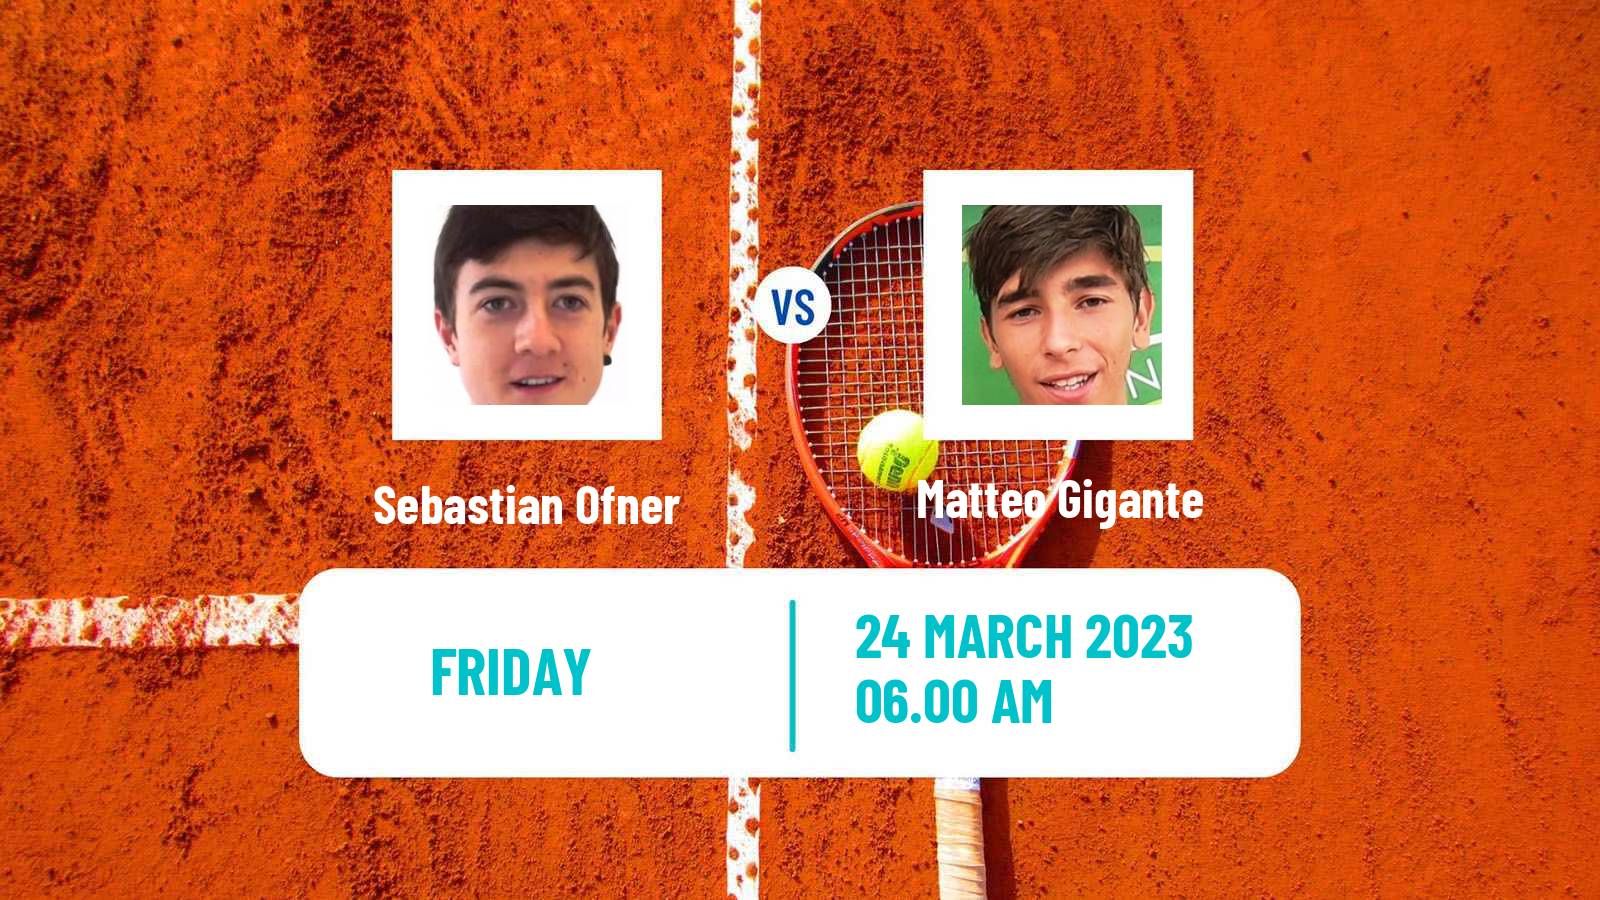 Tennis ATP Challenger Sebastian Ofner - Matteo Gigante